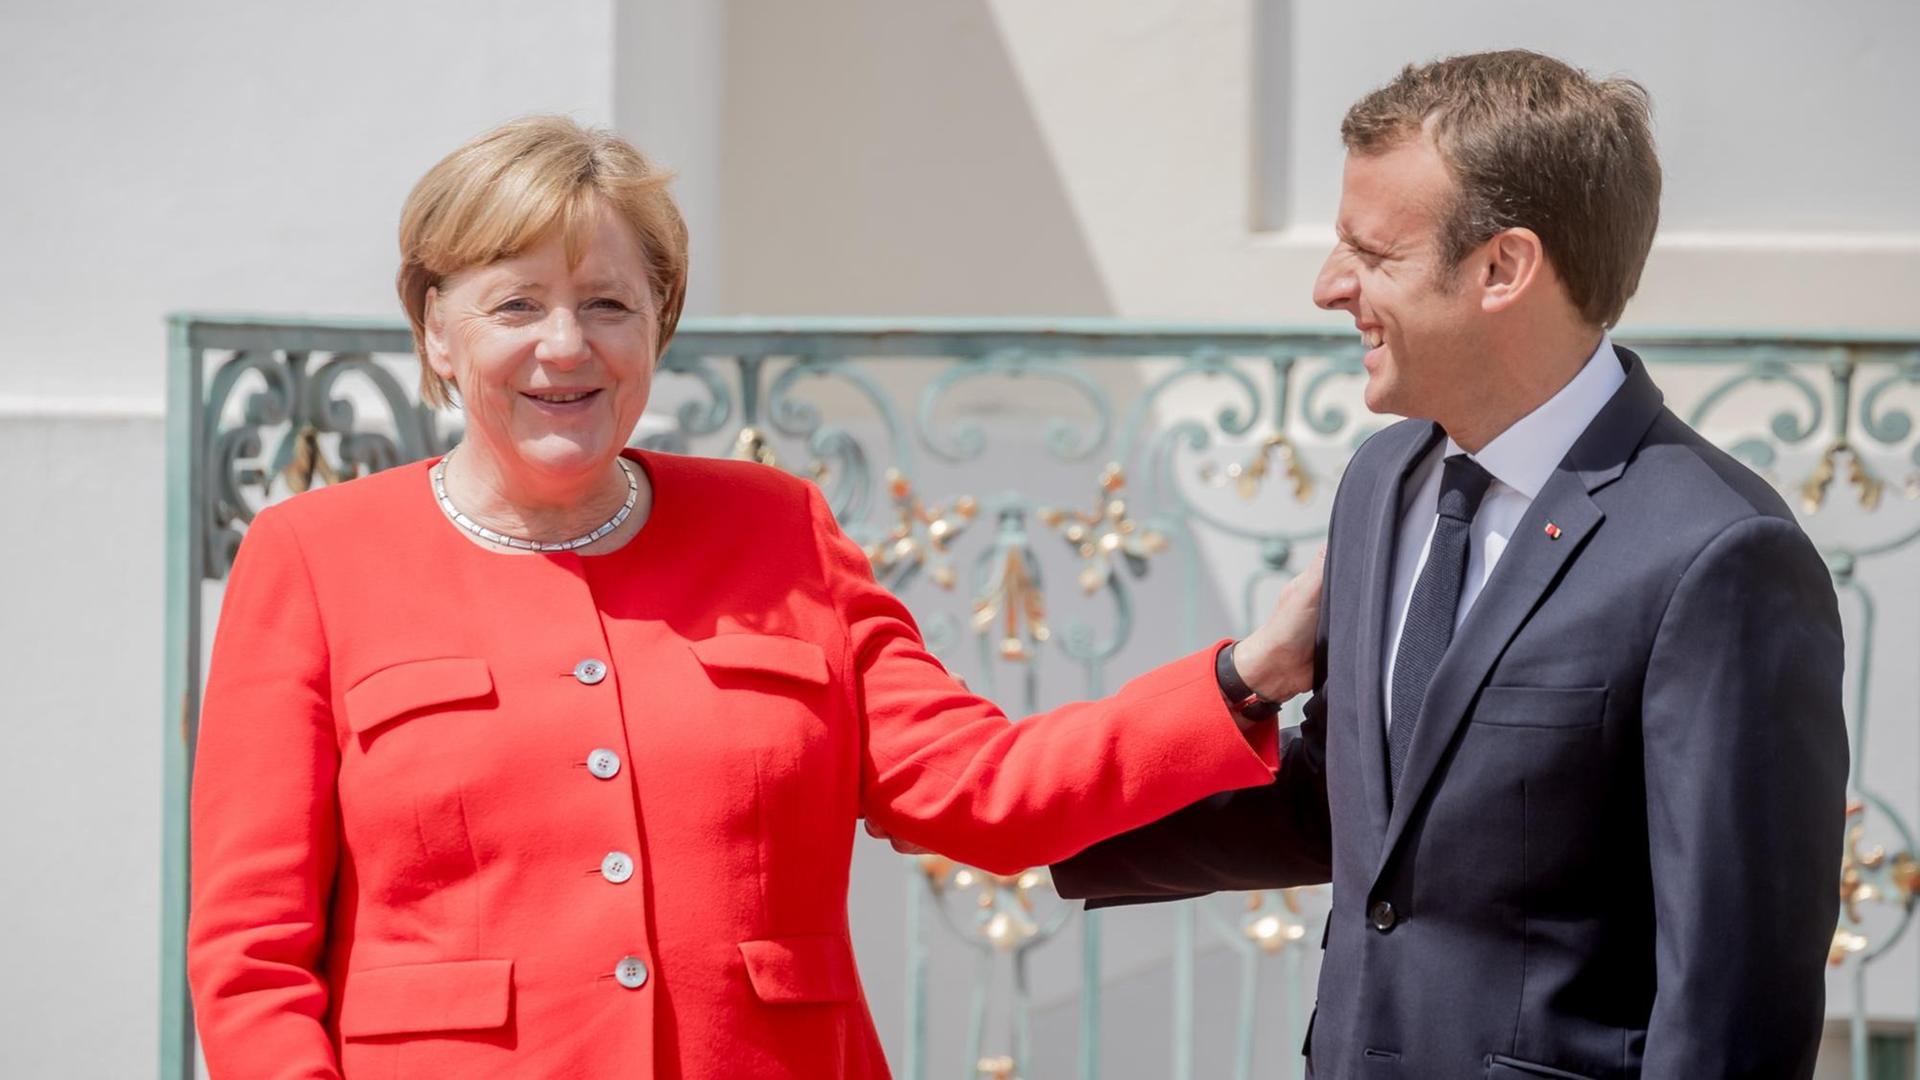 Bundeskanzlerin Angela Merkel (CDU) steht neben Emmanuel Macron, Präsident von Frankreich, bei der Ankunft zum Deutsch-Französischen Ministerrat vor Schloss Meseberg.